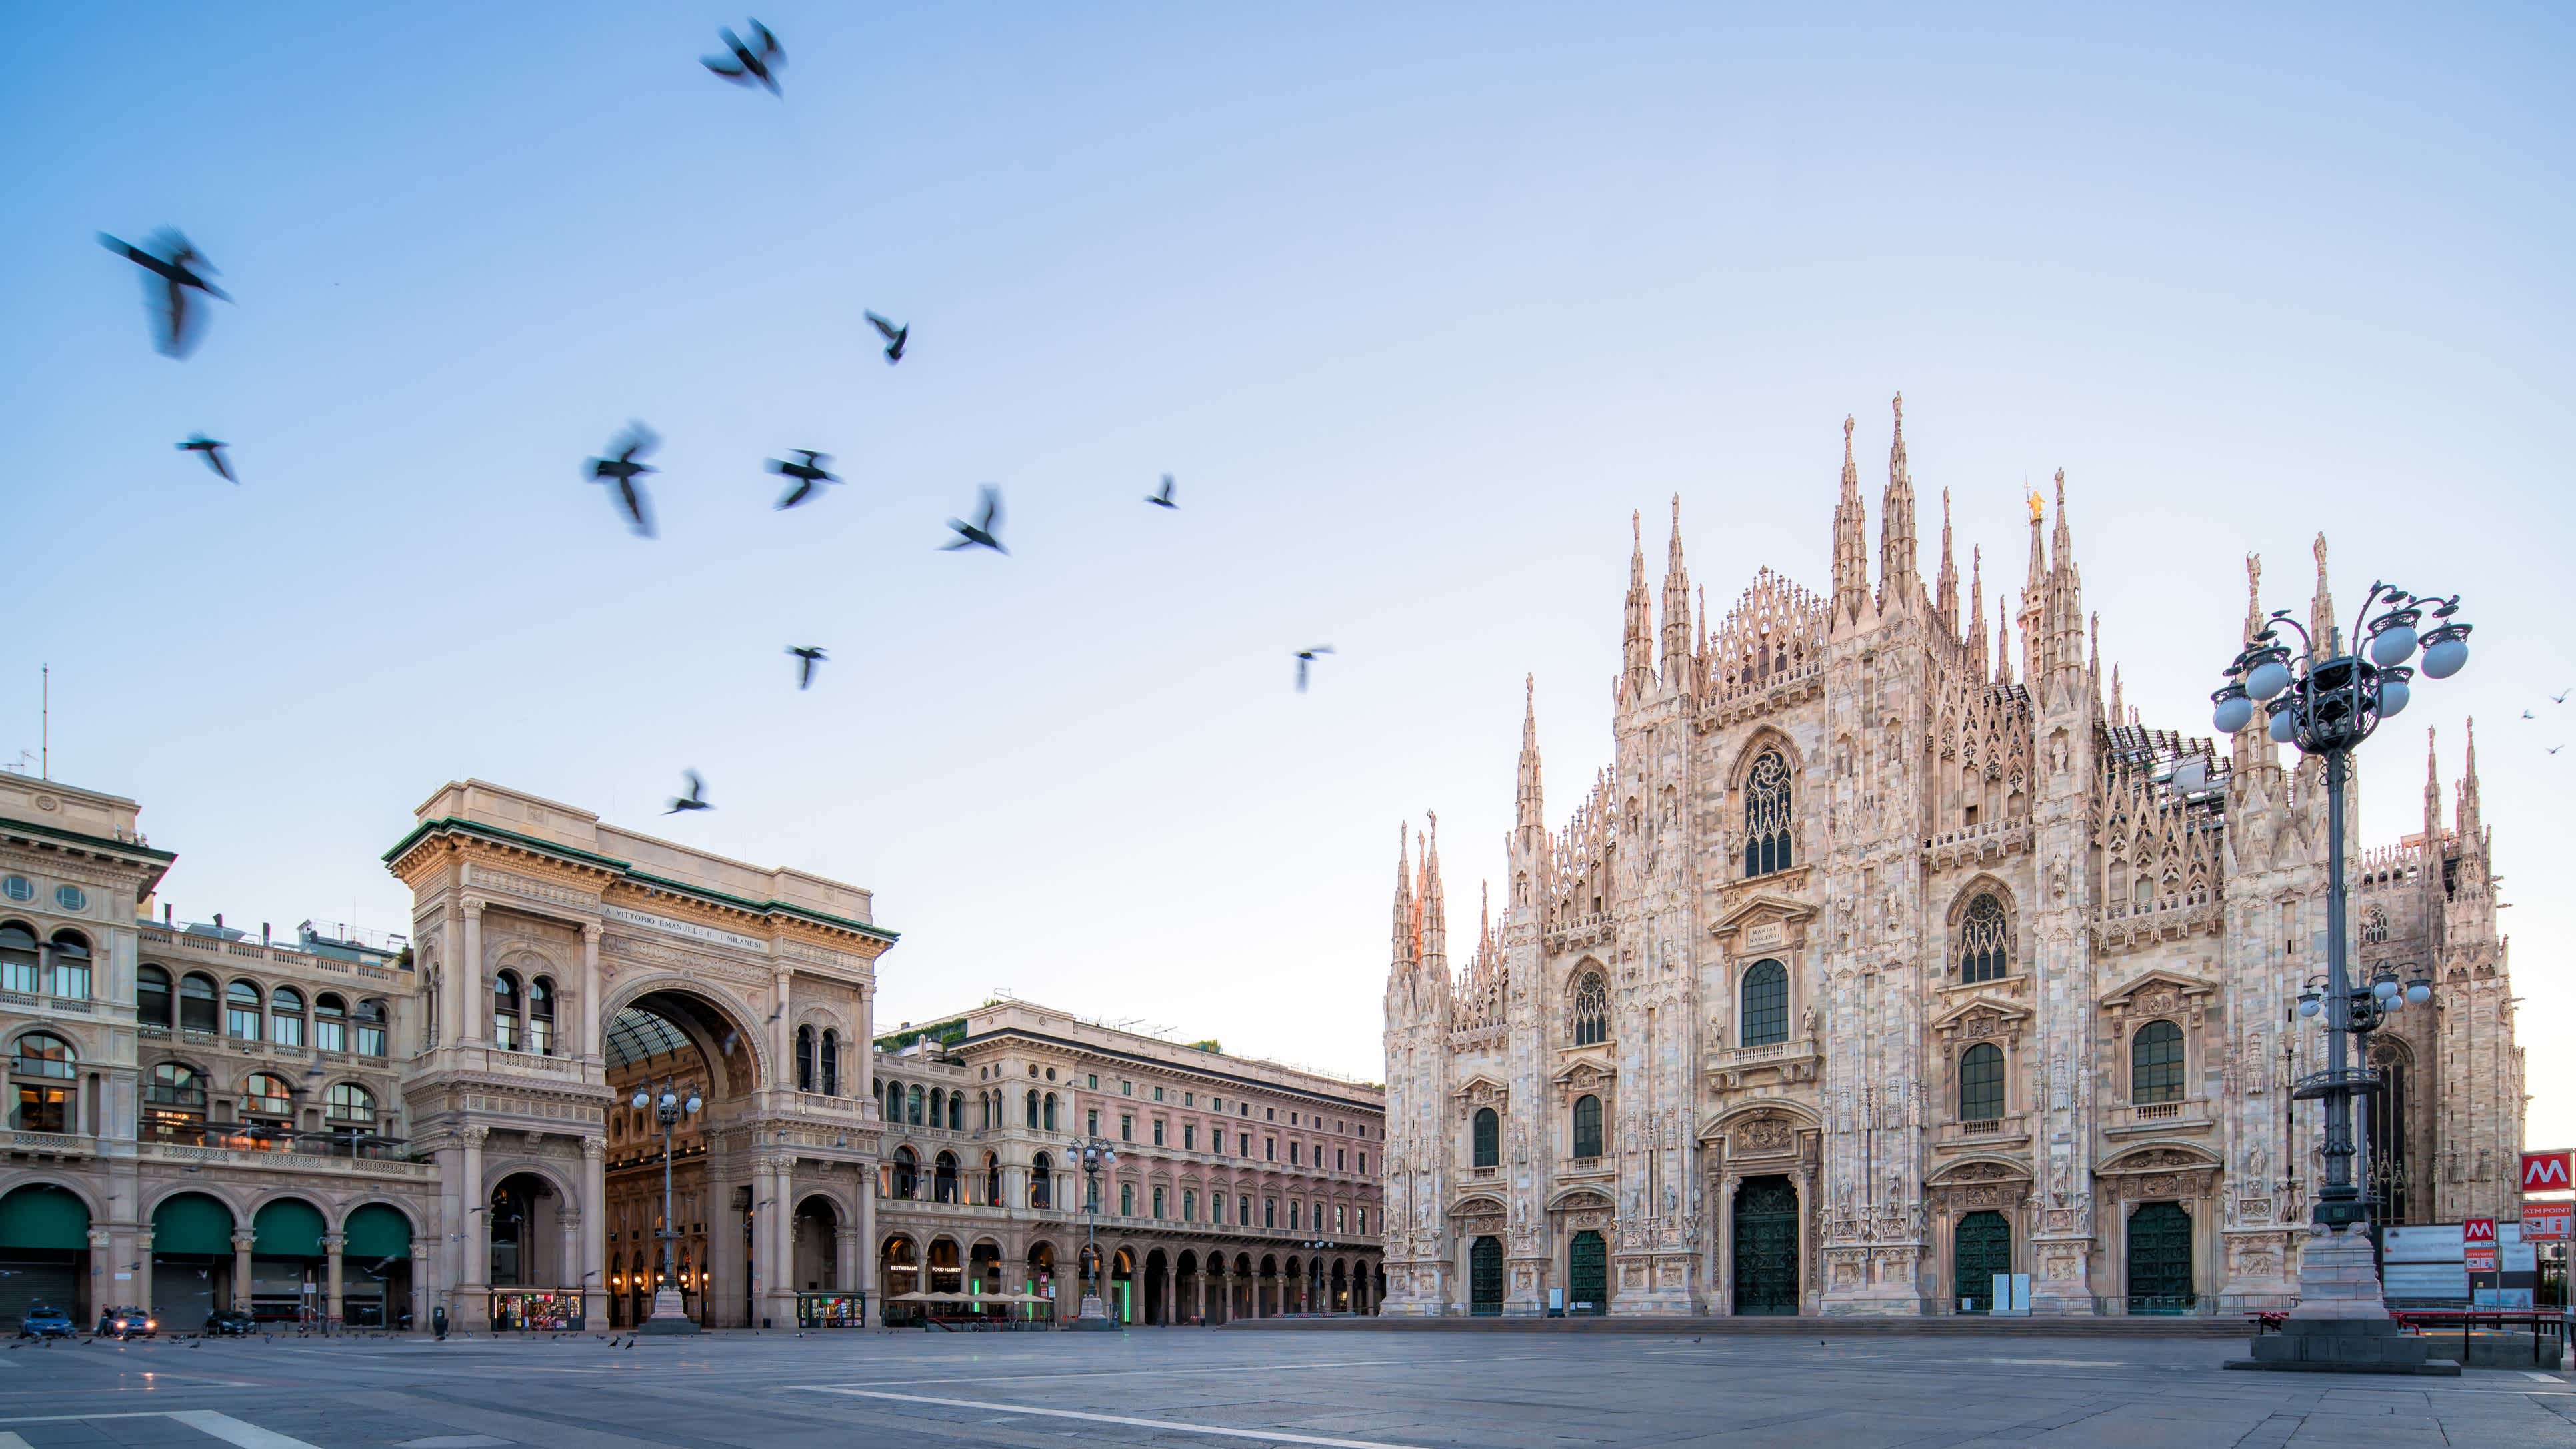 Admirez la cathédrale sur la Piazza del Dumo pendant votre voyage à Milan.